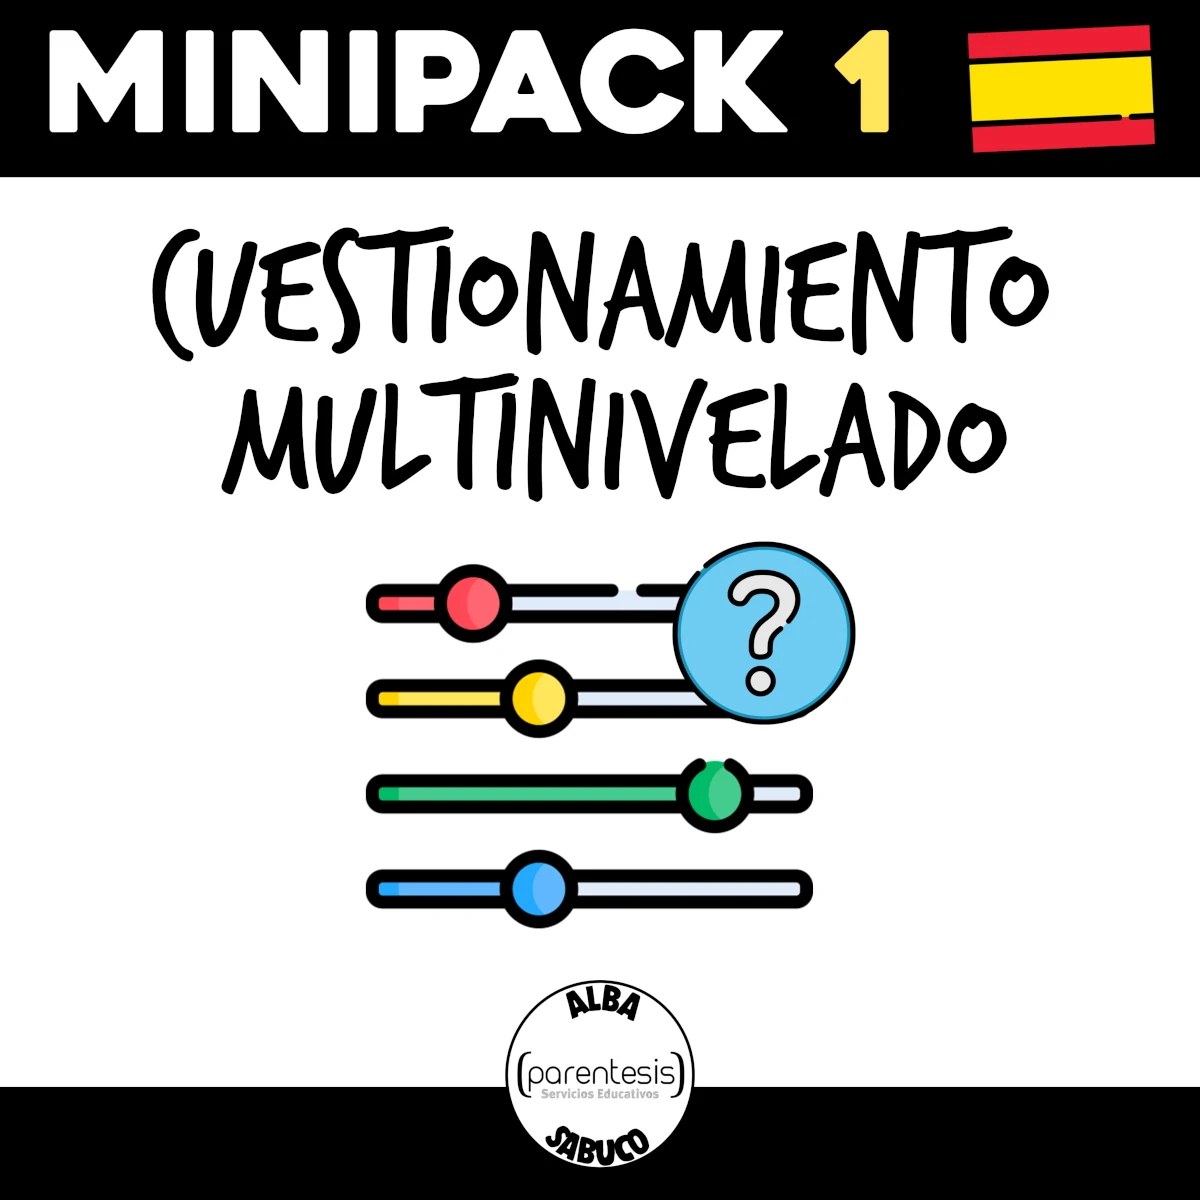 Minipack en español sobre Cuestionamiento multinivelado de Parentesis